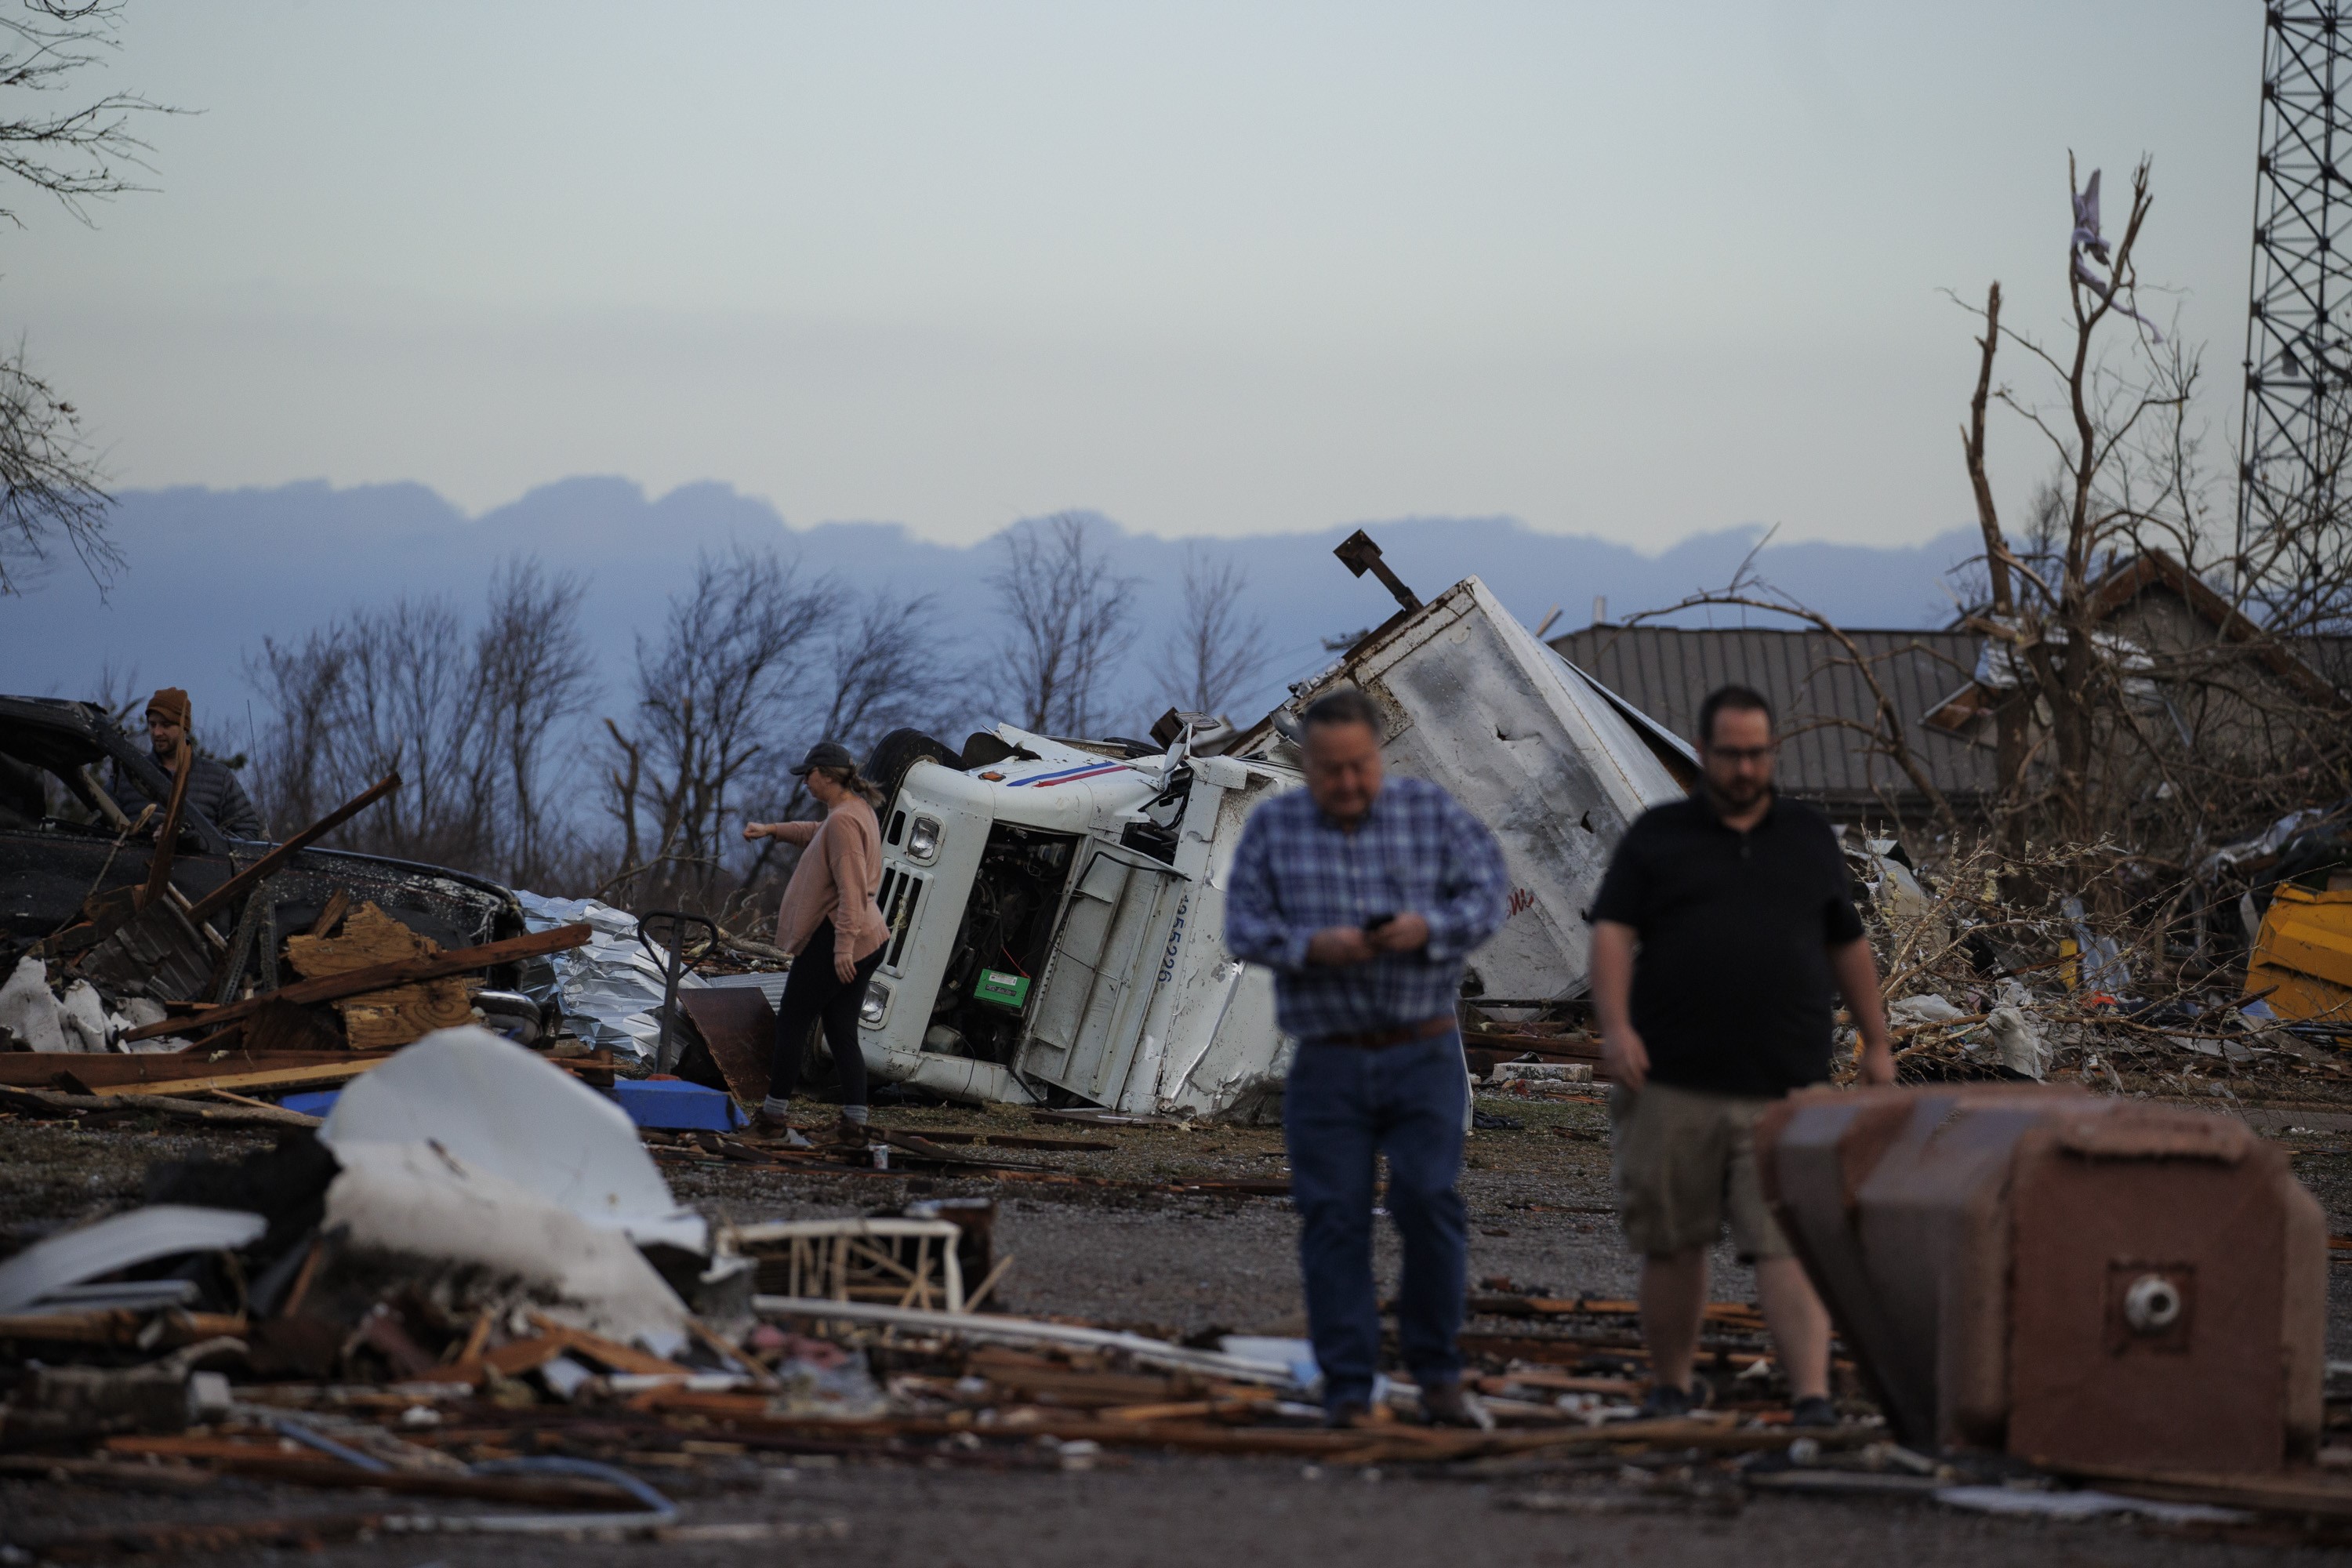 Daños provocados por el tornado que pasó por Mayfield, Kentucky la noche del viernes último. (Foto Prensa Libre: AFP)